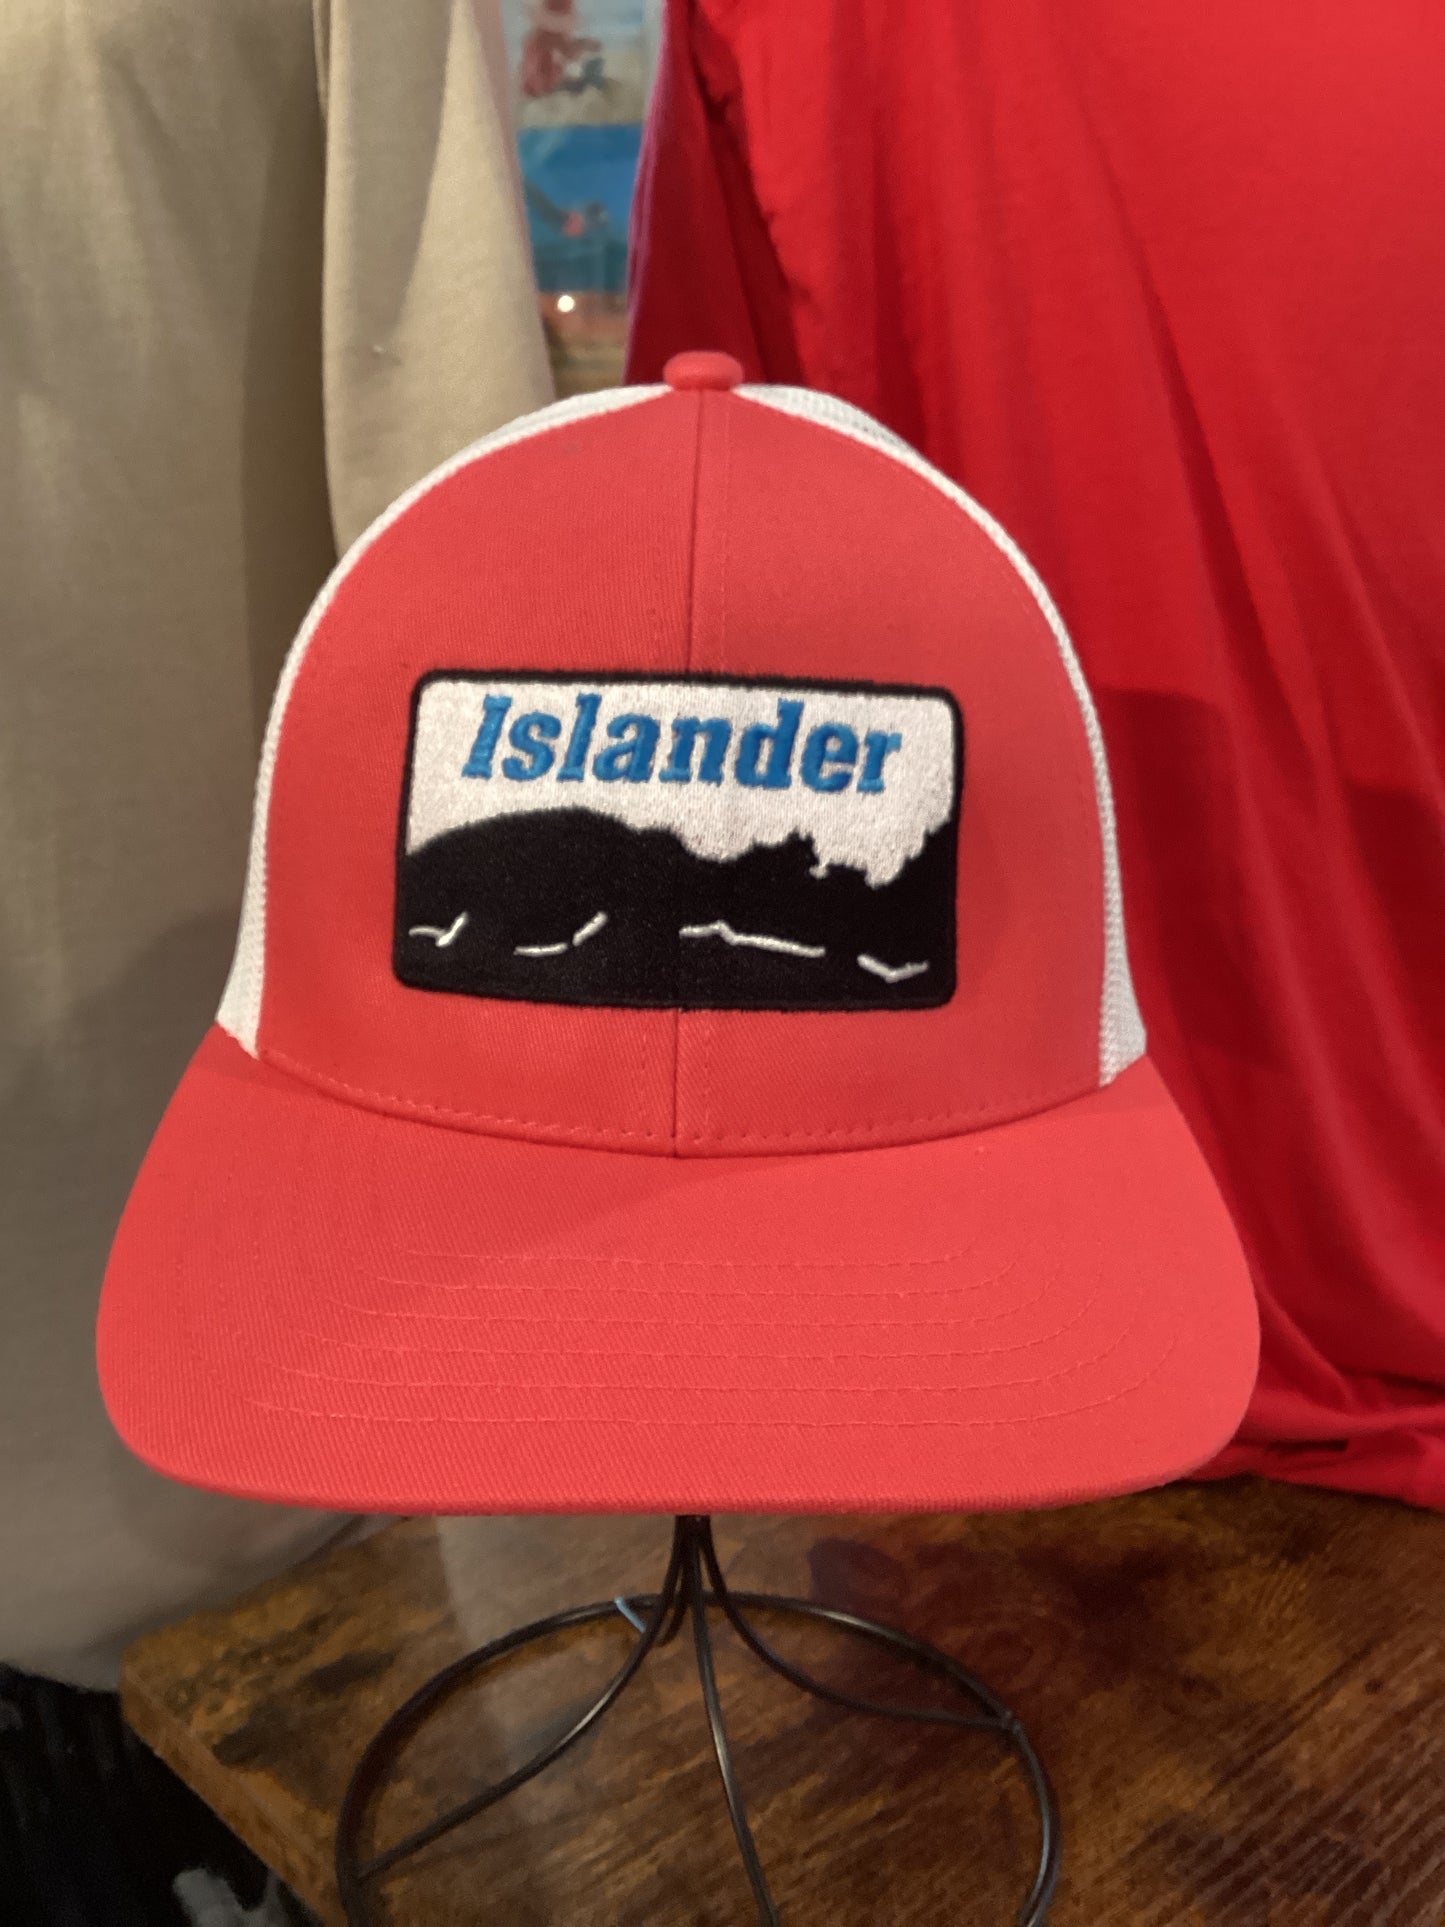 Islander Coastline Caps